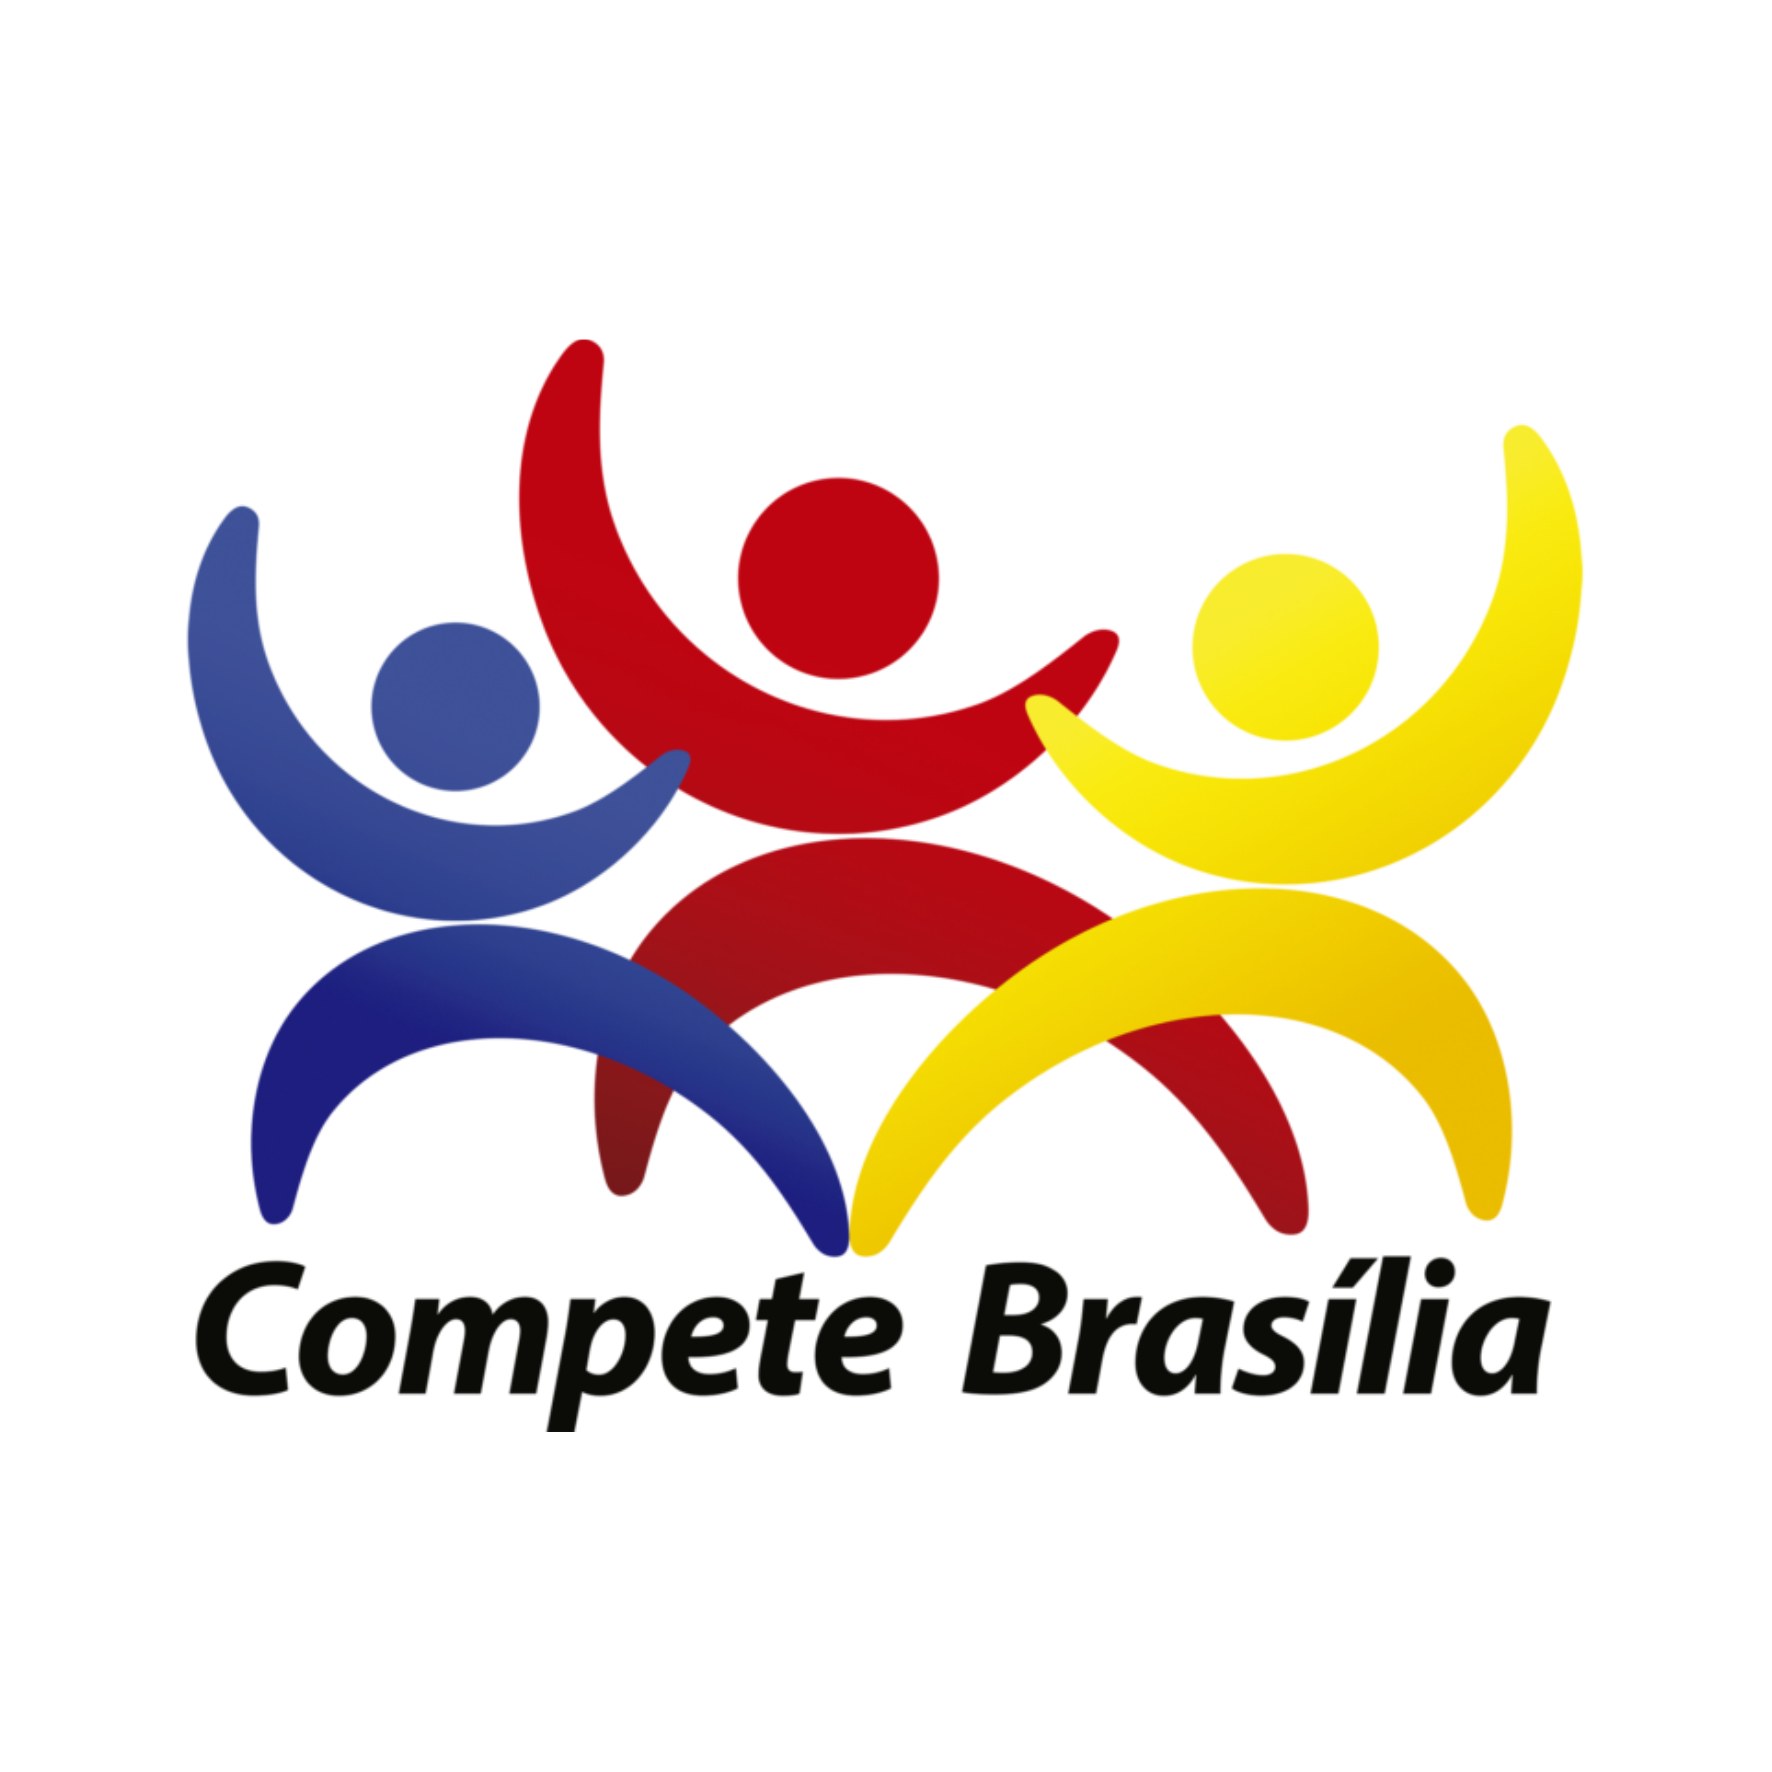 Compete Brasilia 2